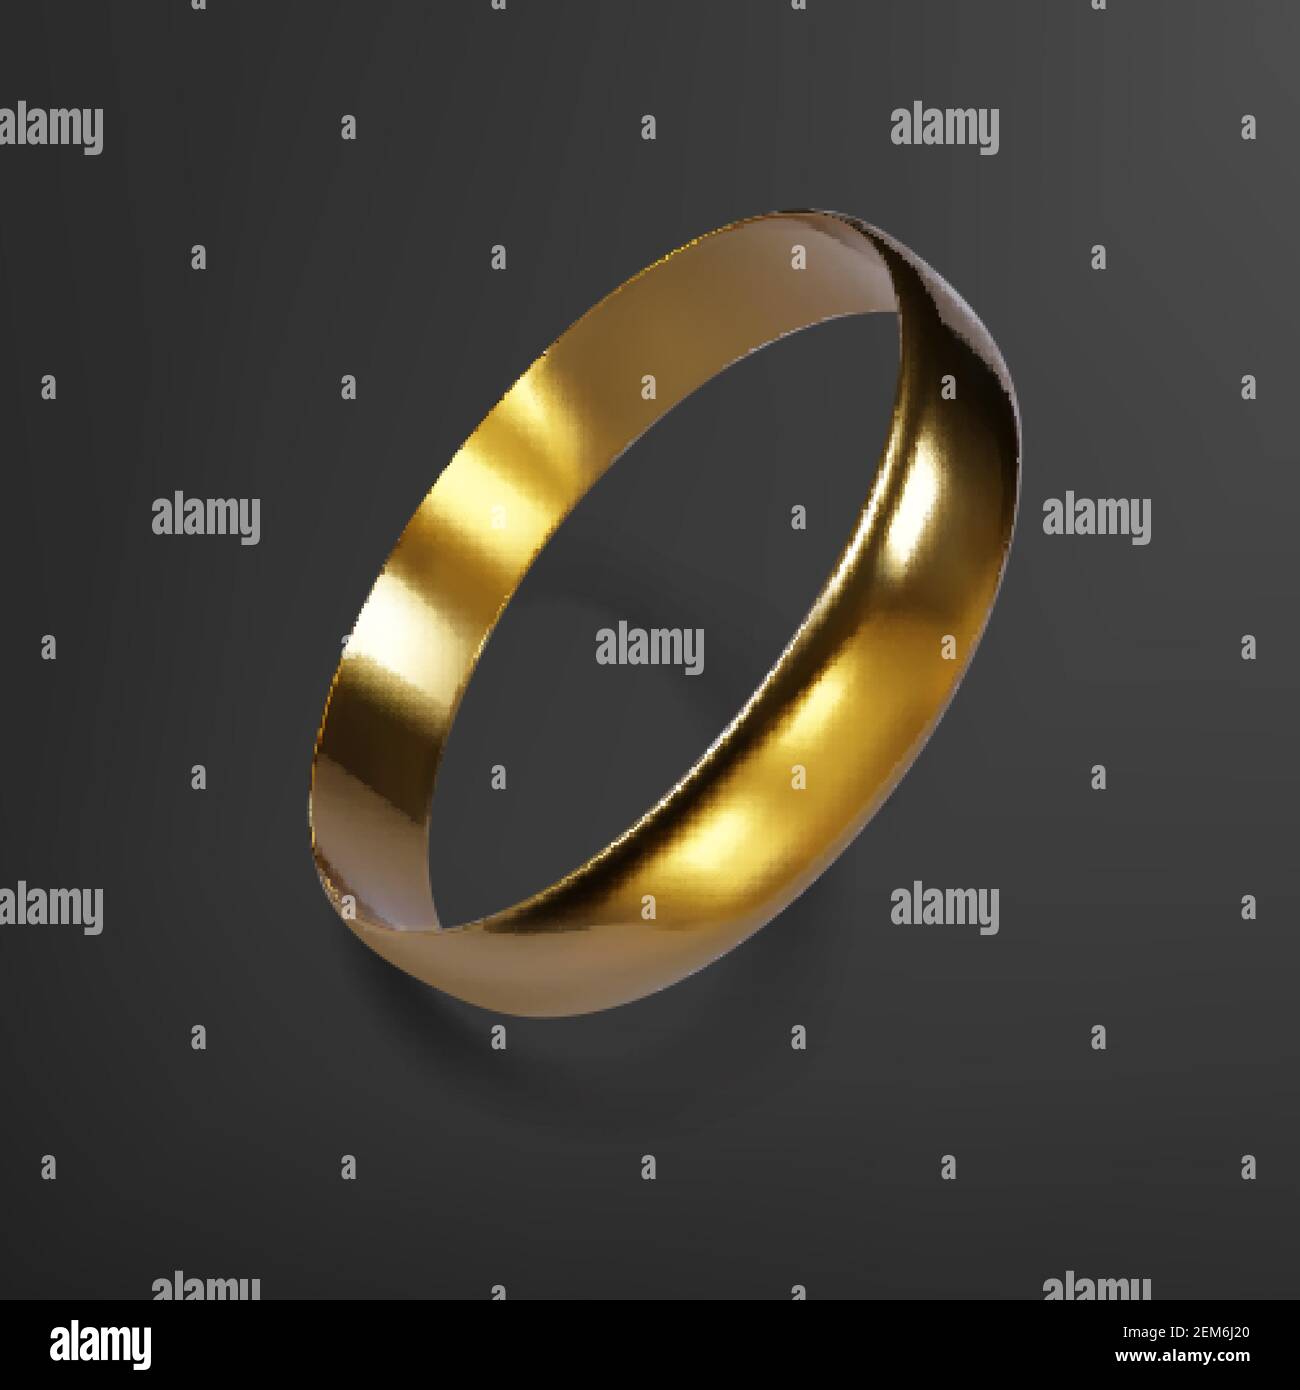 Anello di nozze d'oro realistico. Rendering 3D dell'anello dorato. Illustrazione vettoriale Illustrazione Vettoriale